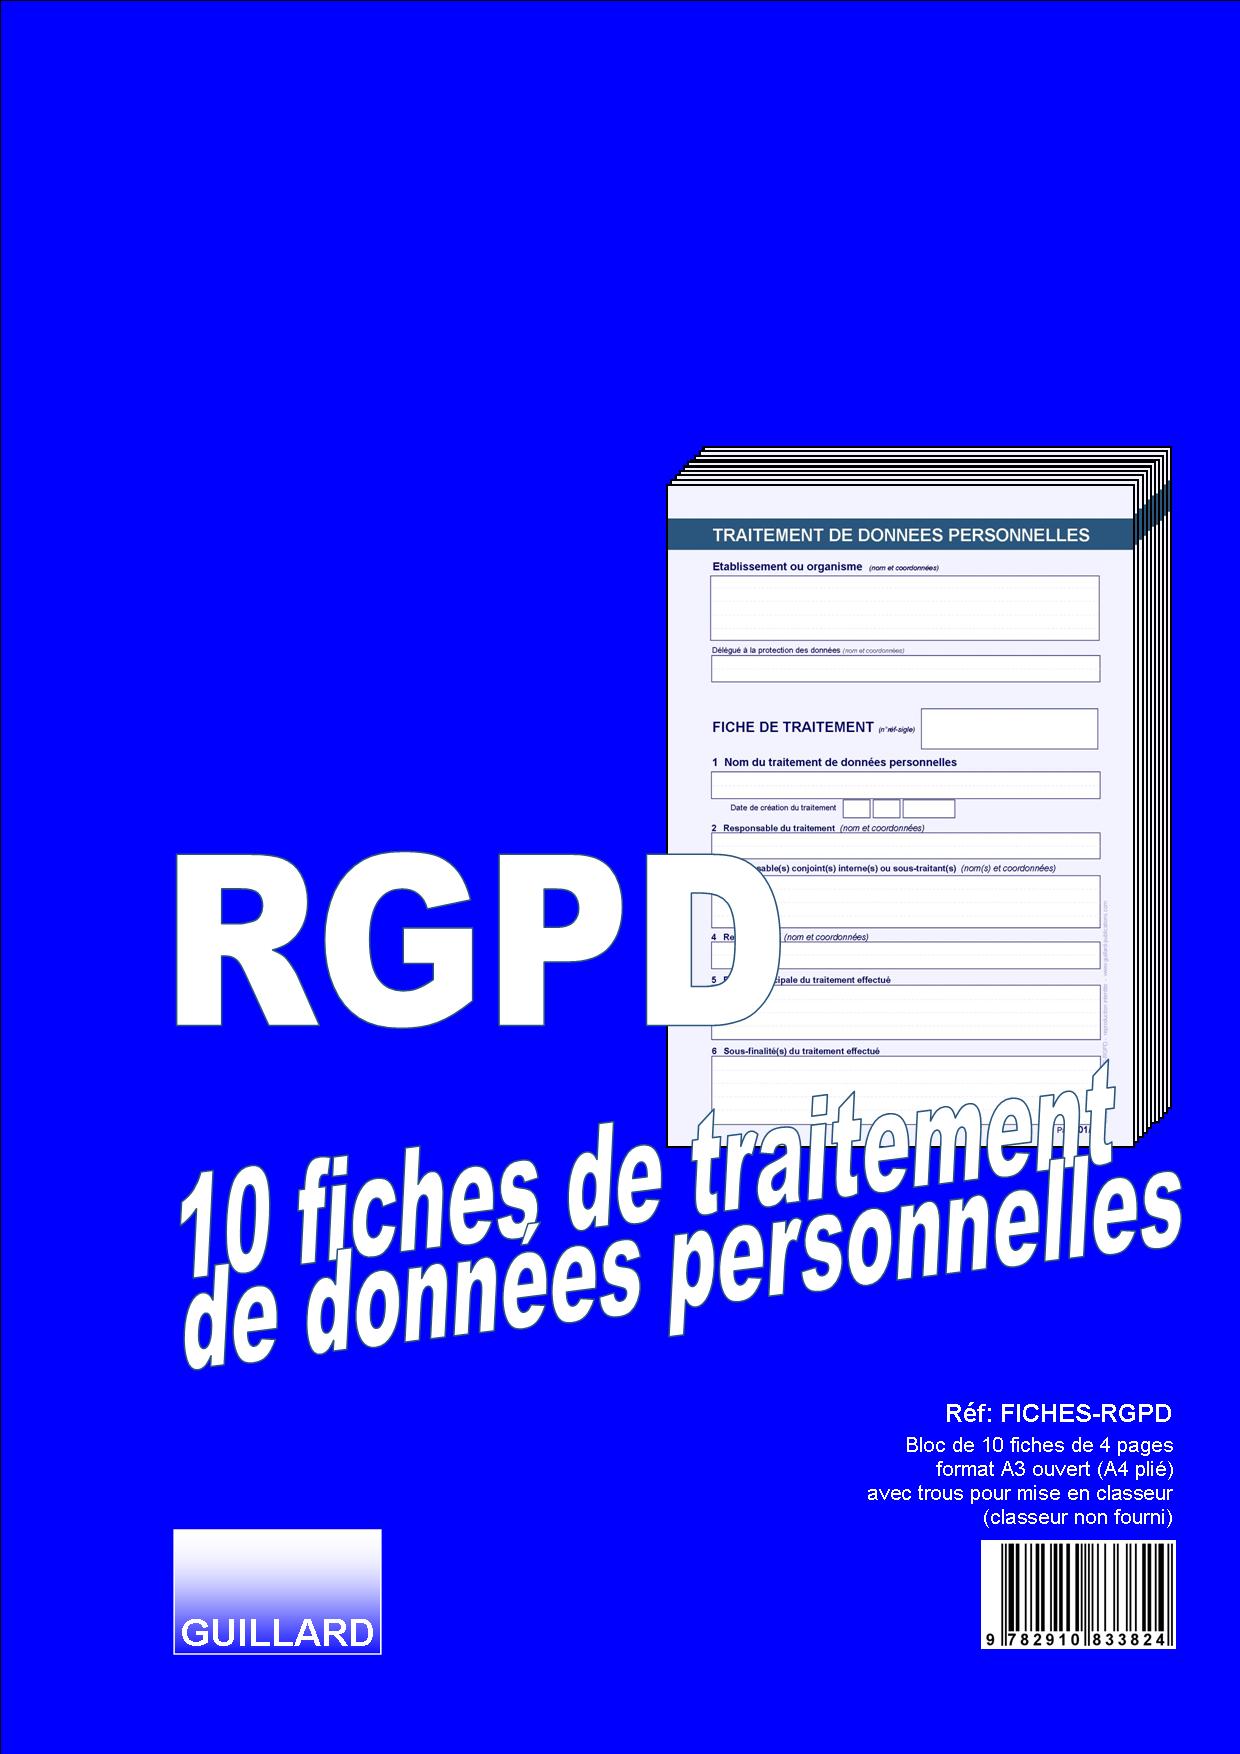 FICHES RGPD DE TRAITEMENT DES DONNEES PERSONNELLES - Edition GUILLARD